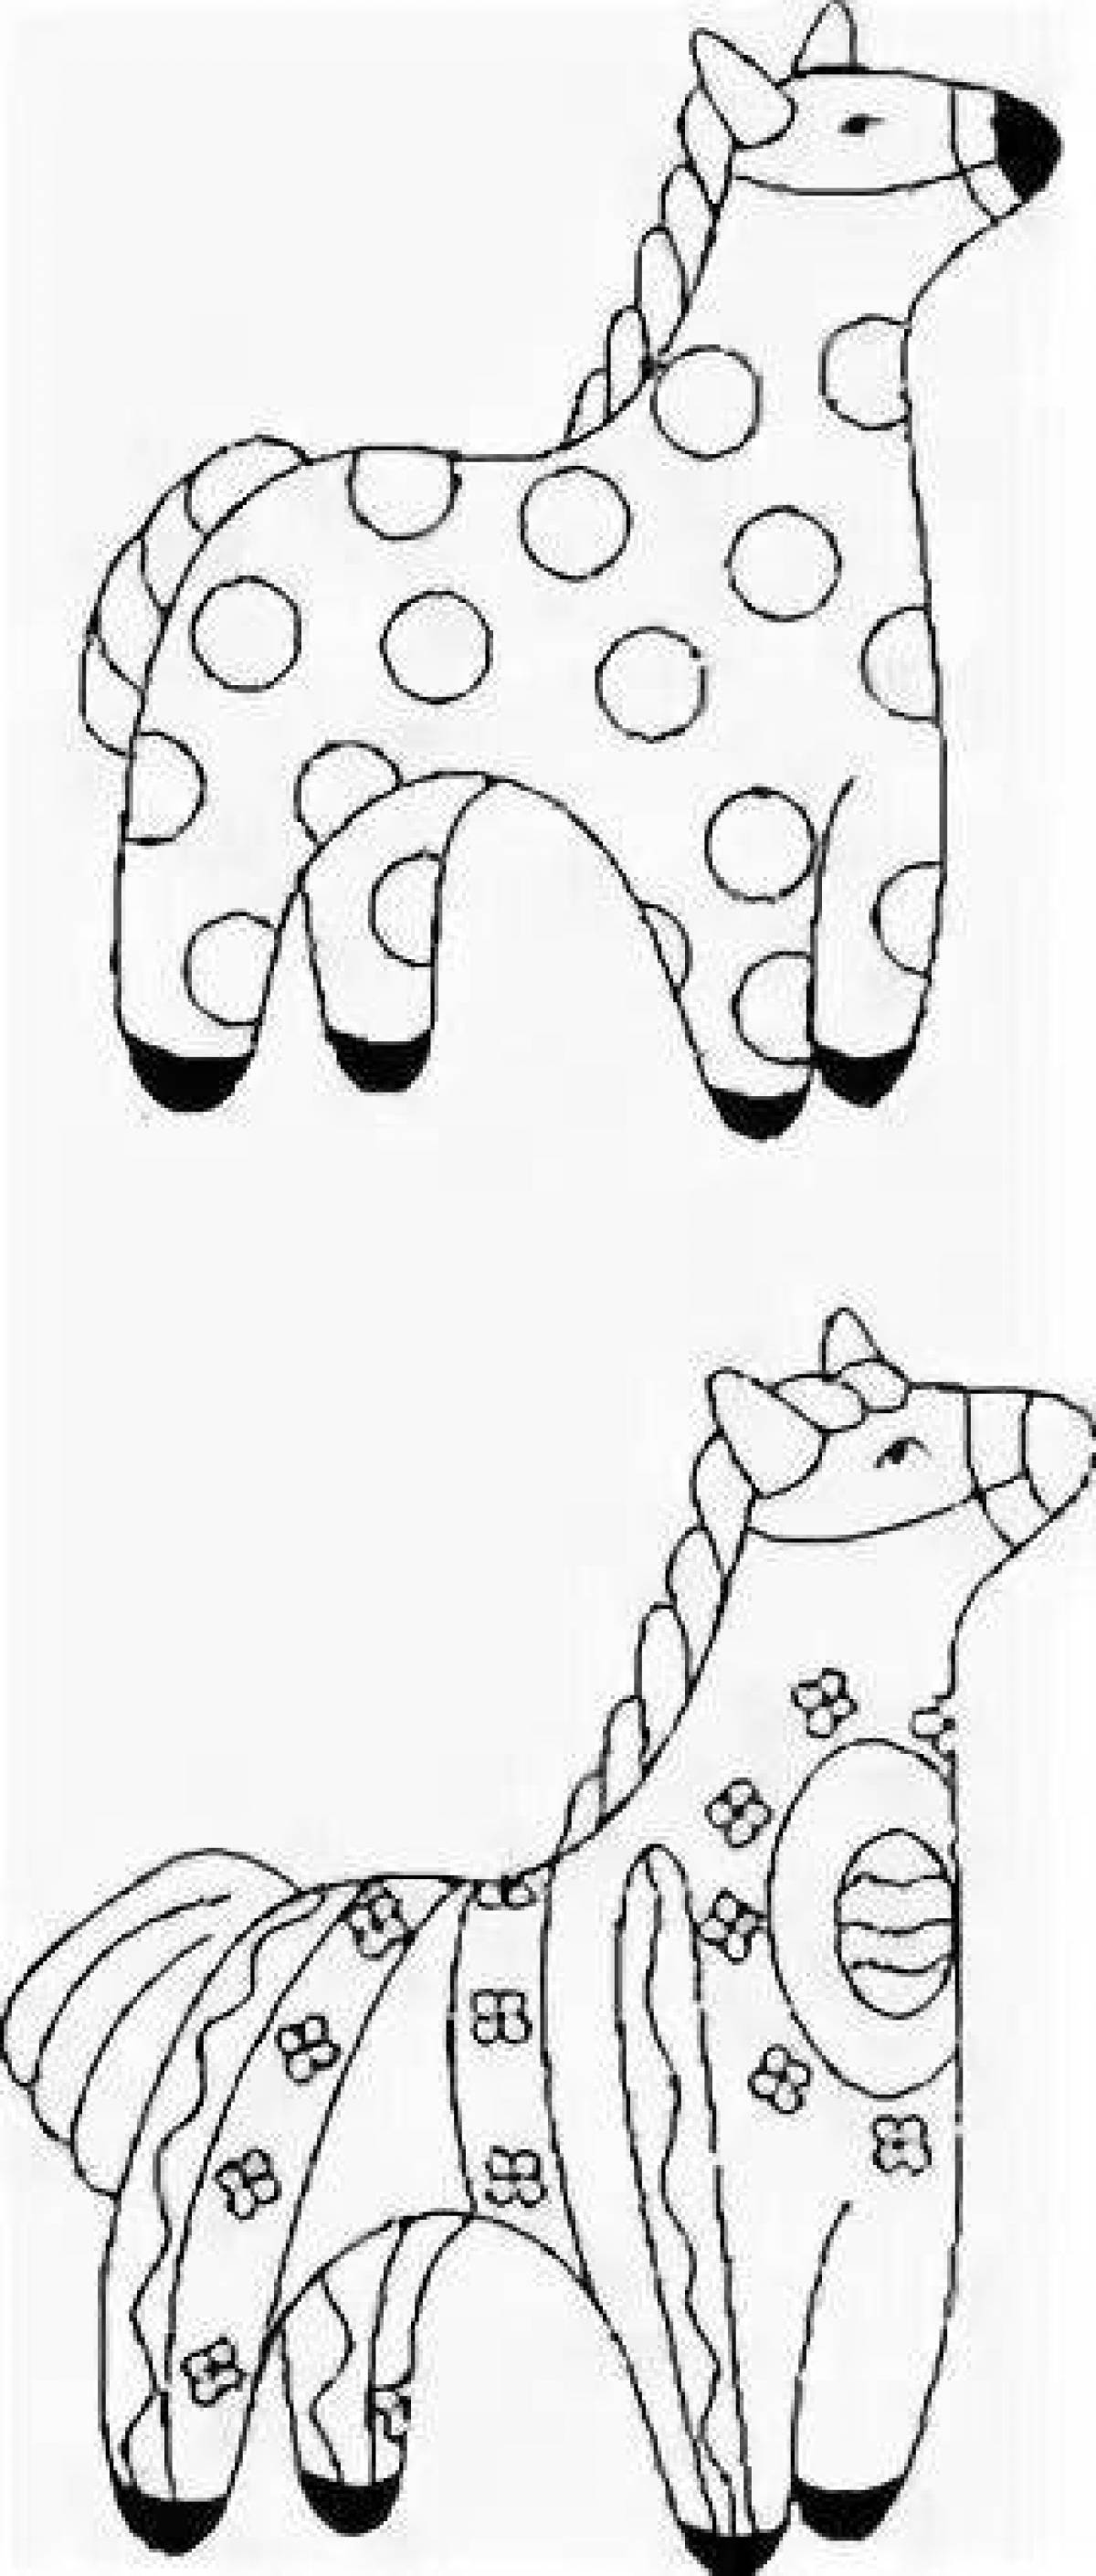 Игрушка дымковская рисунок раскраска